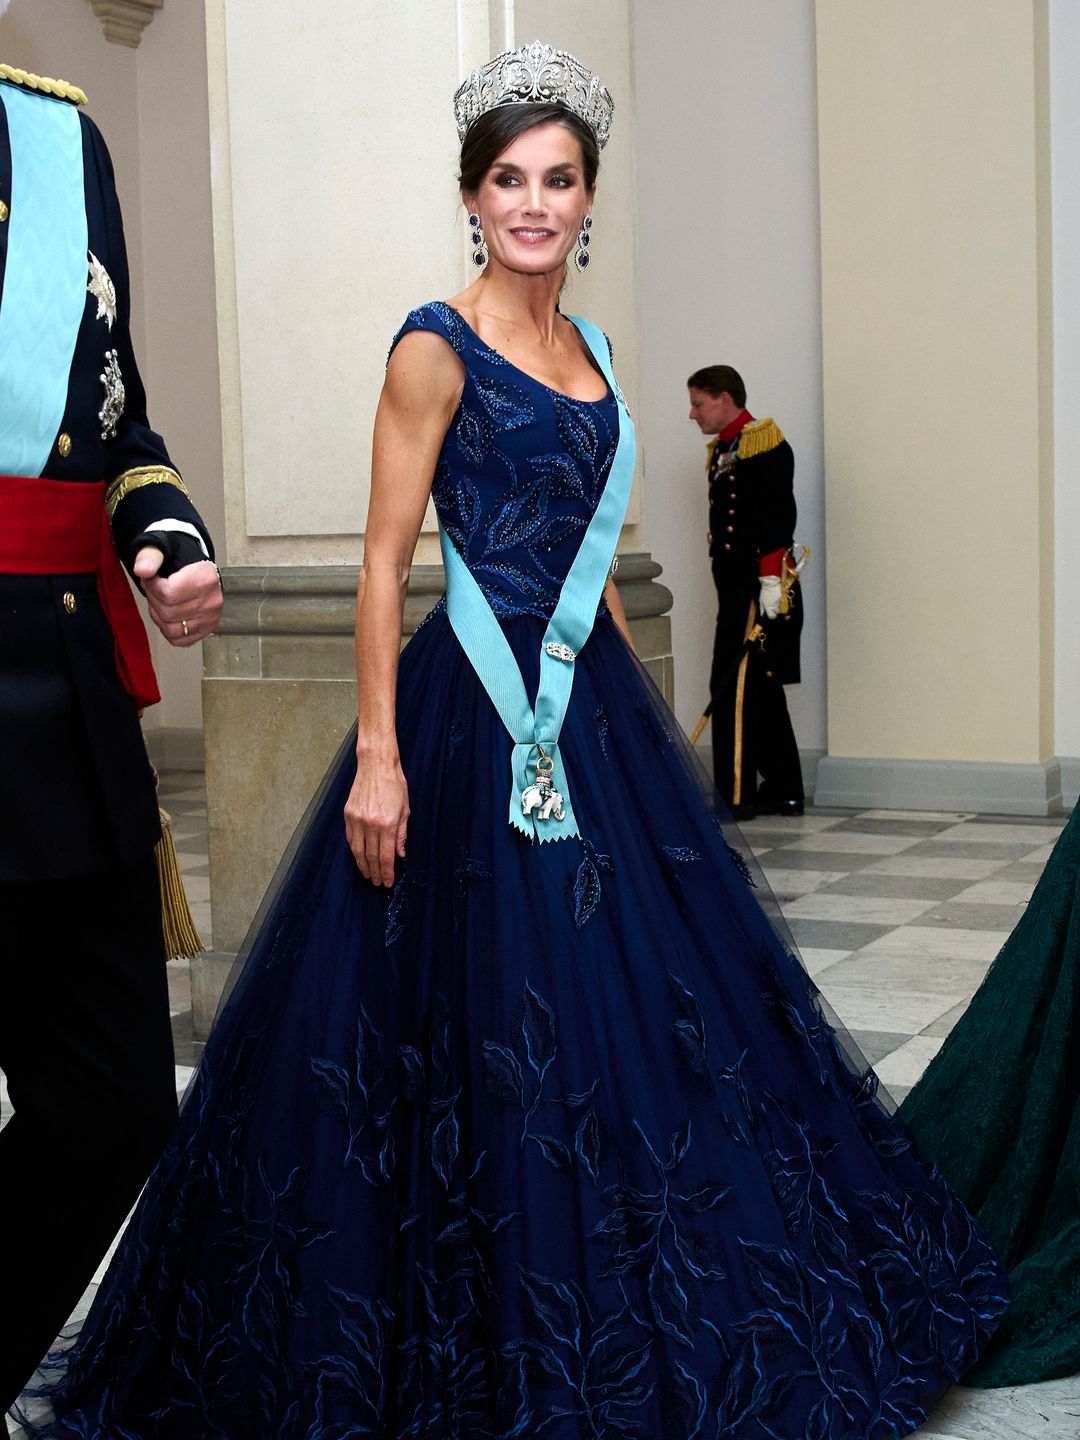 Queen Letizia looked stunning in a dark blue dress by Felipe Varela